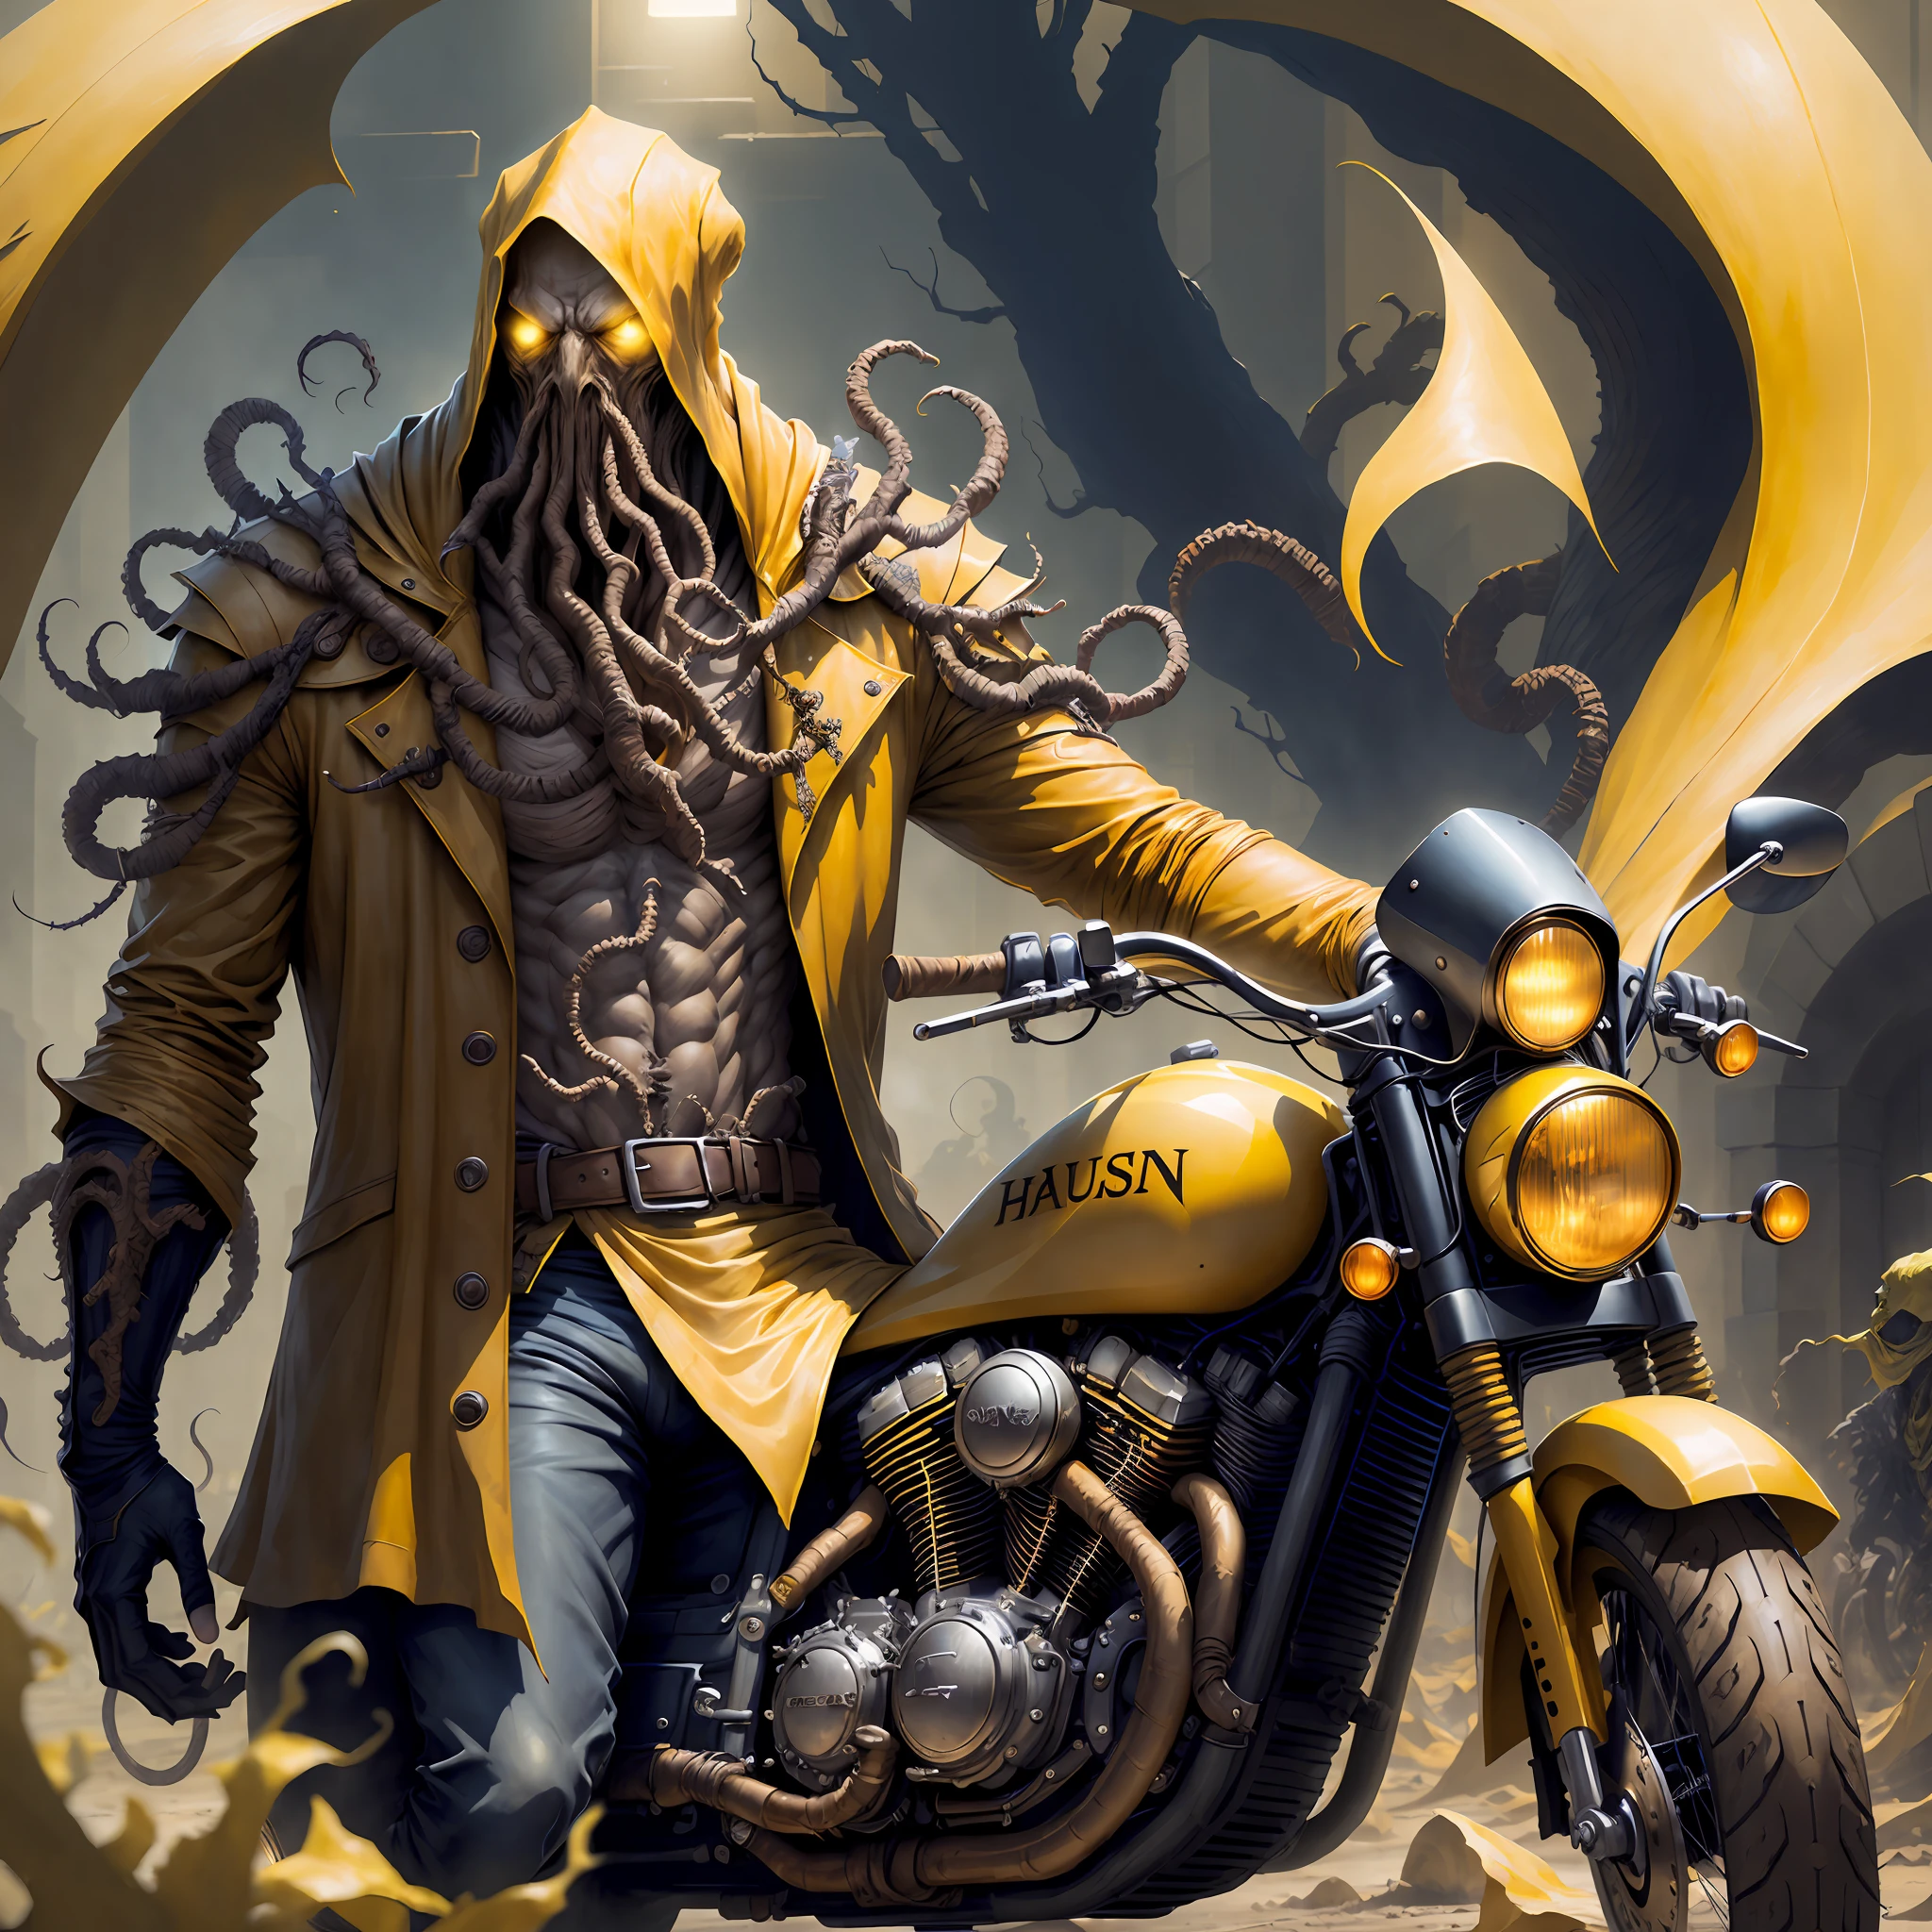 "하스투르, 노란색 옷을 입은 왕이 오토바이를 타고 있다"